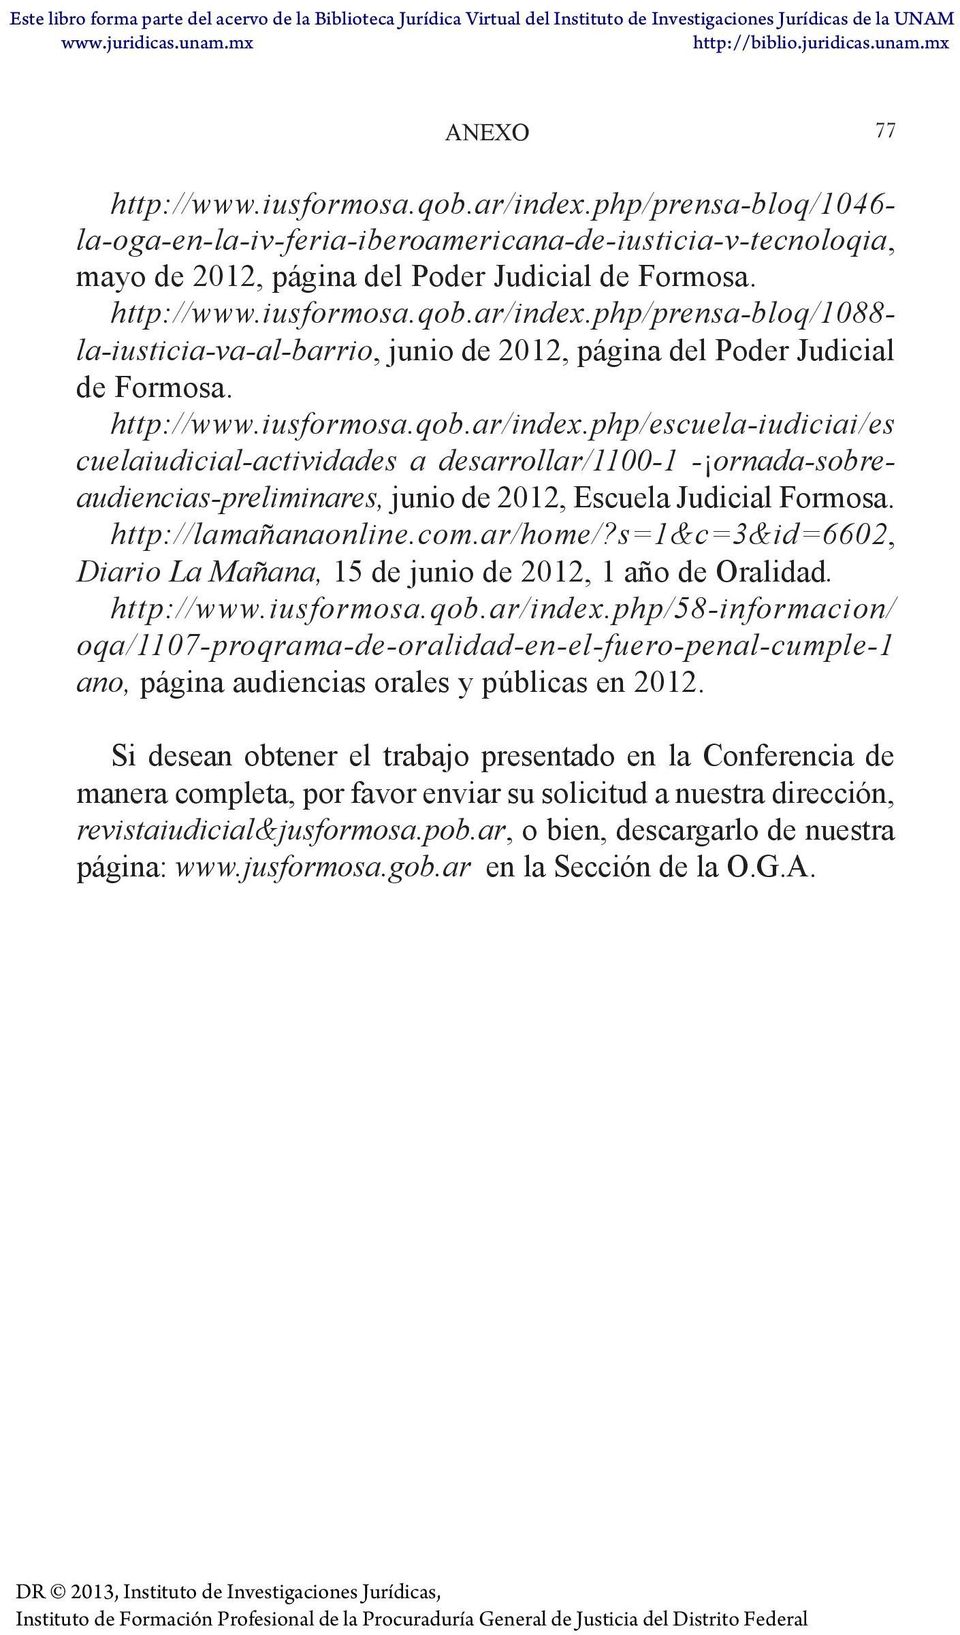 http://lamañanaonline.com.ar/home/?s=1&c=3&id=6602, Diario La Mañana, 15 de junio de 2012, 1 año de Oralidad. http://www.iusformosa.qob.ar/index.